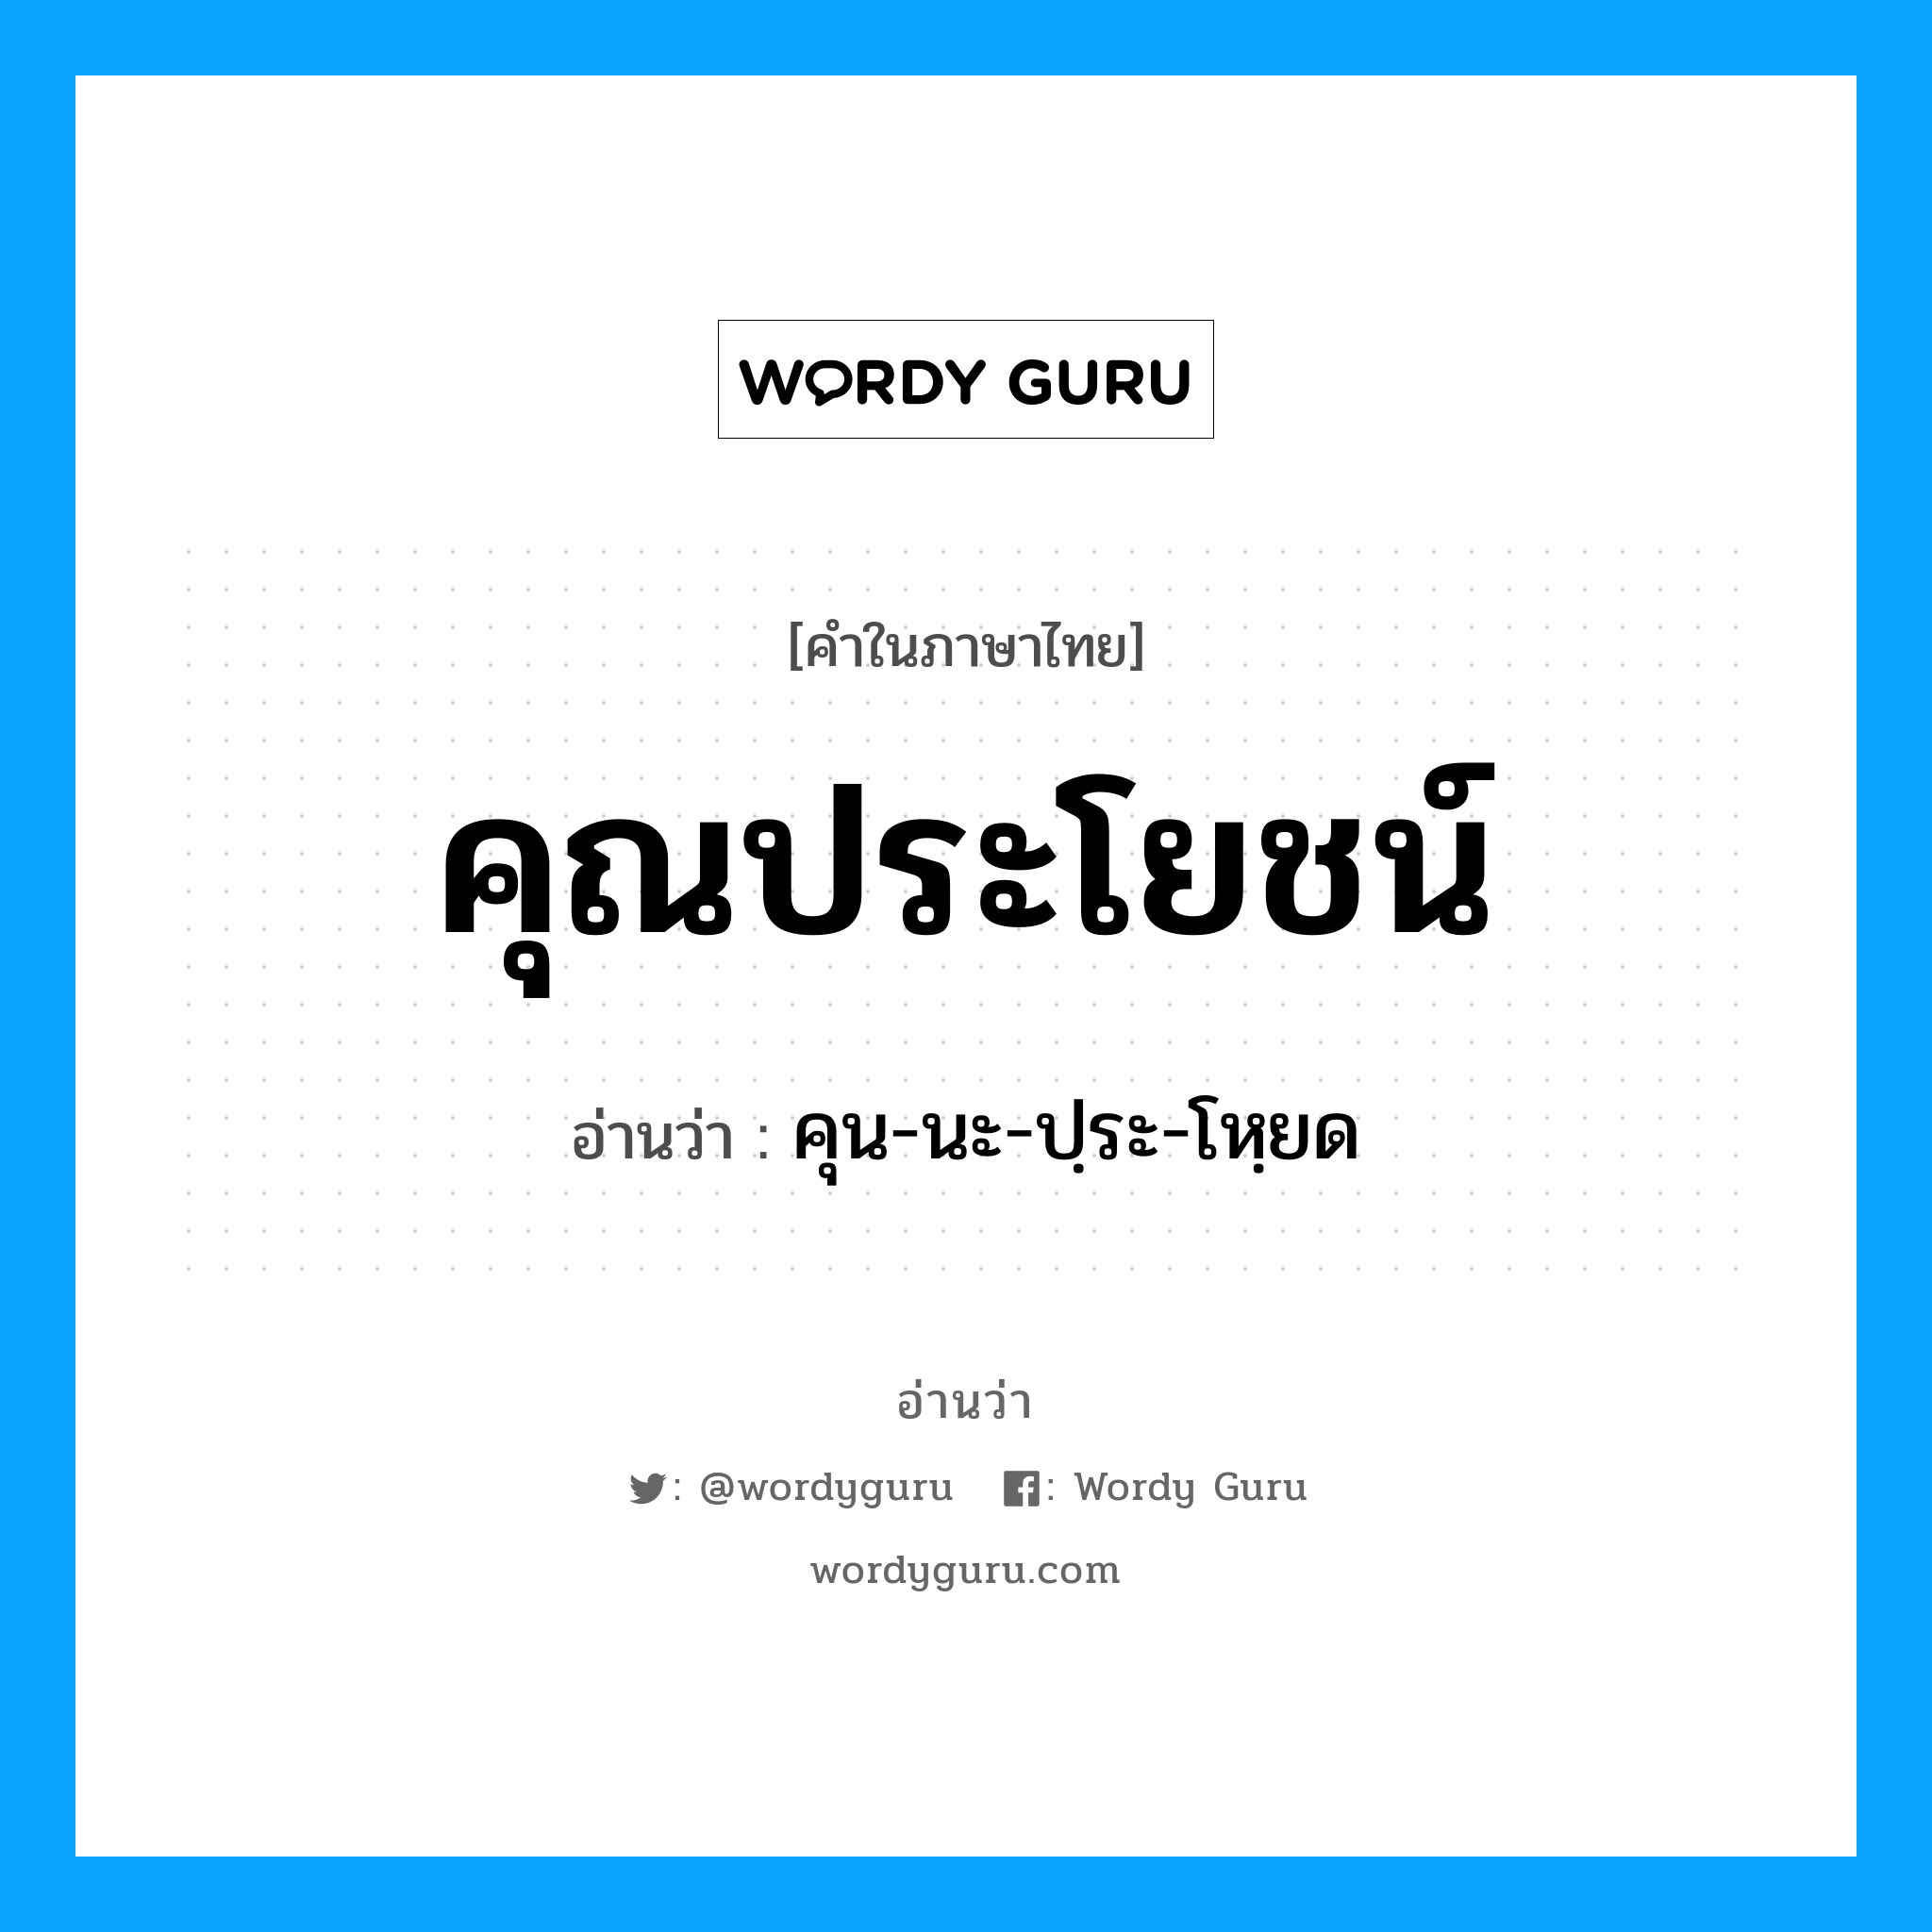 คุน-นะ-ปฺระ-โหฺยด เป็นคำอ่านของคำไหน?, คำในภาษาไทย คุน-นะ-ปฺระ-โหฺยด อ่านว่า คุณประโยชน์